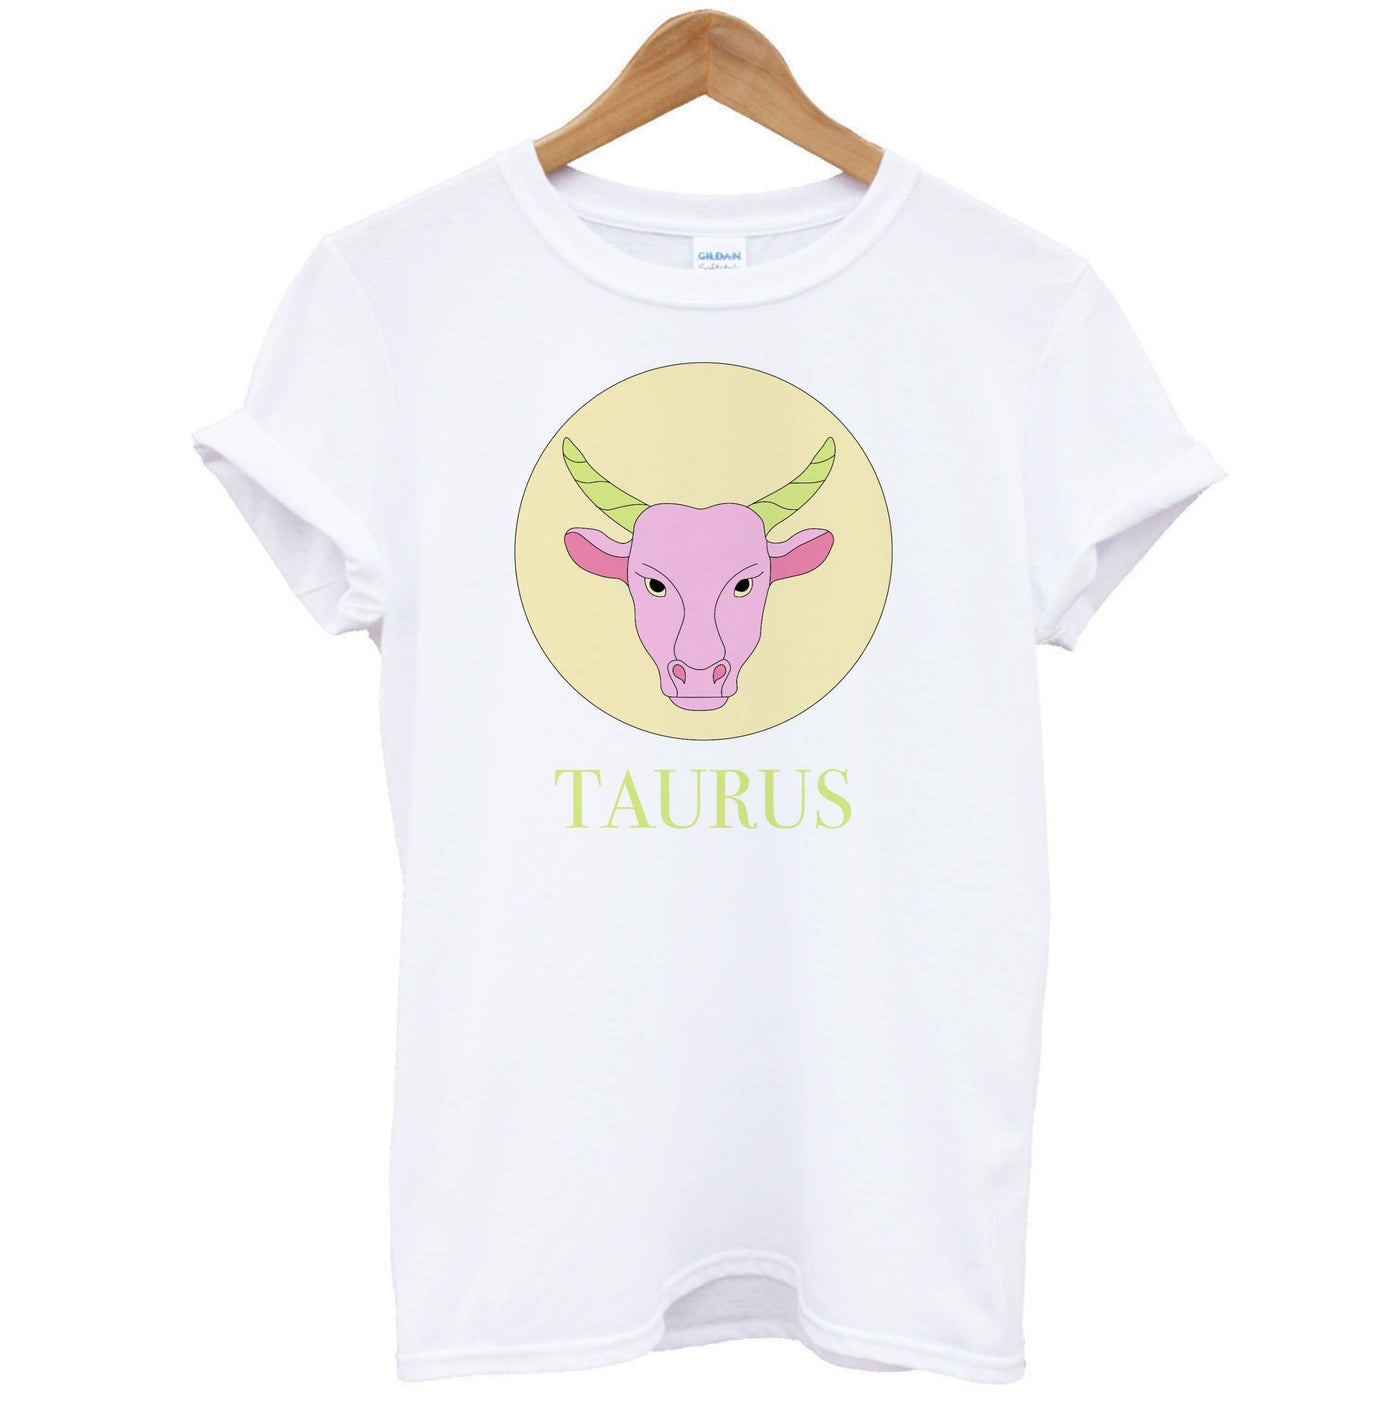 Taurus - Tarot Cards T-Shirt